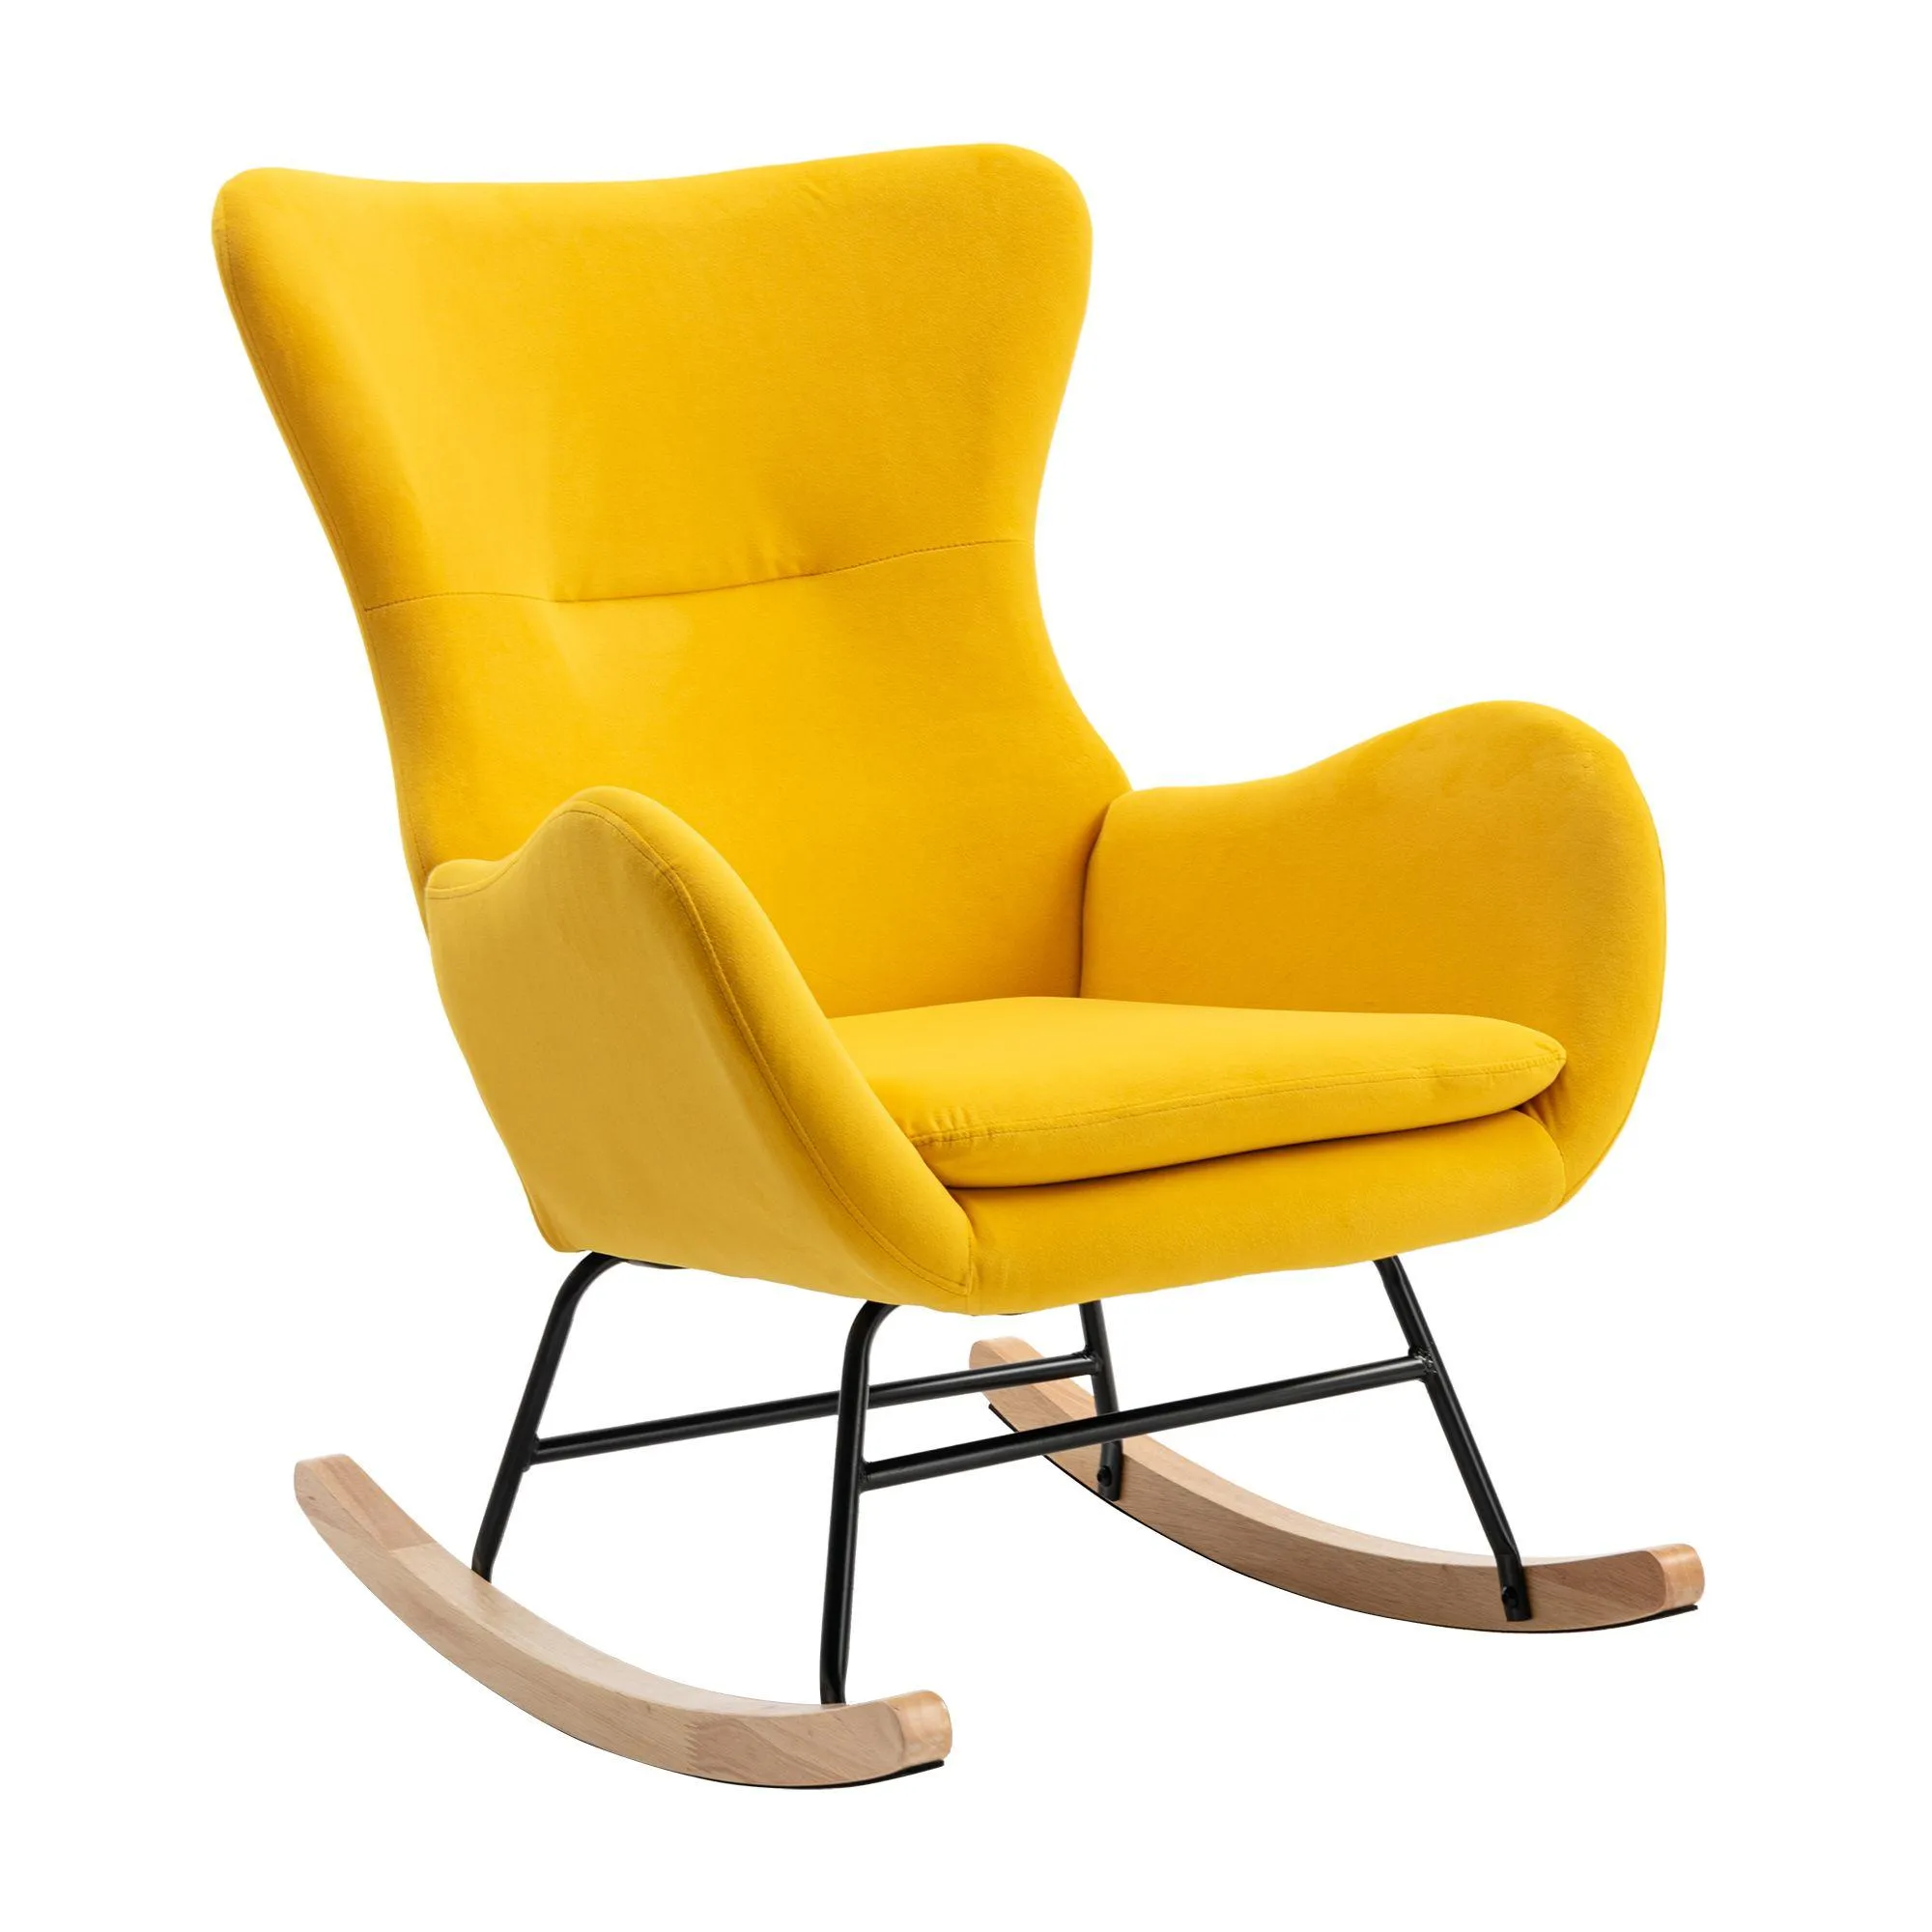 Wygodne i stylowe krzesło na bujanie w salonie z wysokim oparciem i podłokietnikami - idealne do użytku na patio lub w pomieszczenia